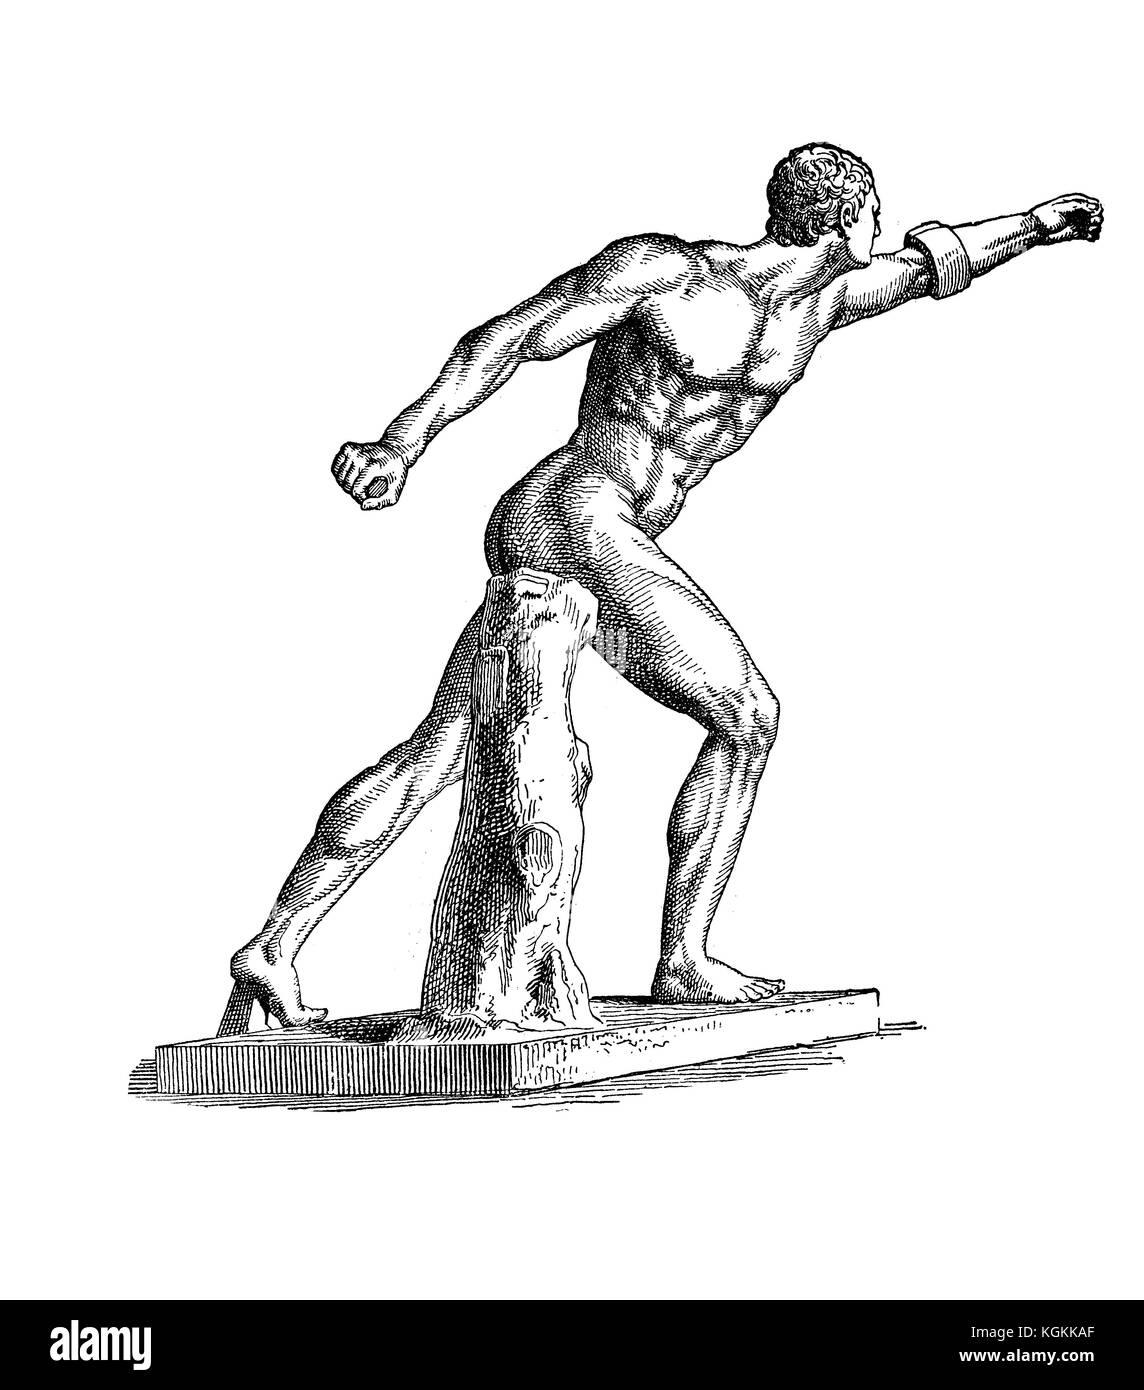 Gladiatore Borghese, scultura in marmo a grandezza naturale di un guerriero che combatte contro un nemico a cavallo, datata 100 a.C. Foto Stock